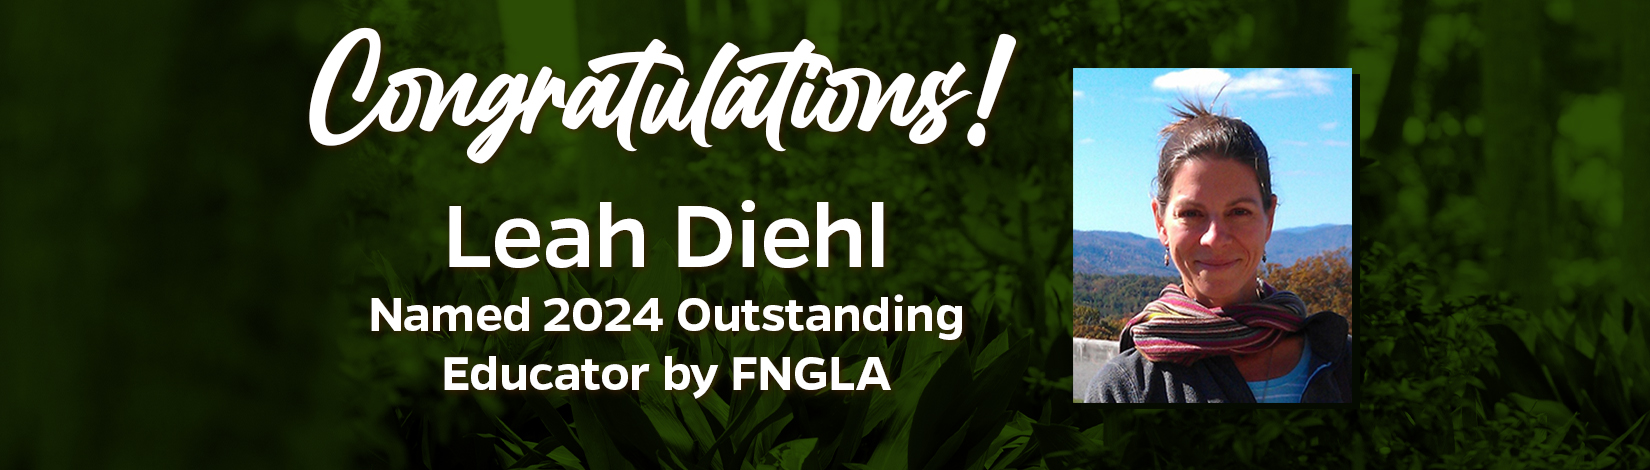 Leah Diehl 2024 Outstanding Educator by FNGLA